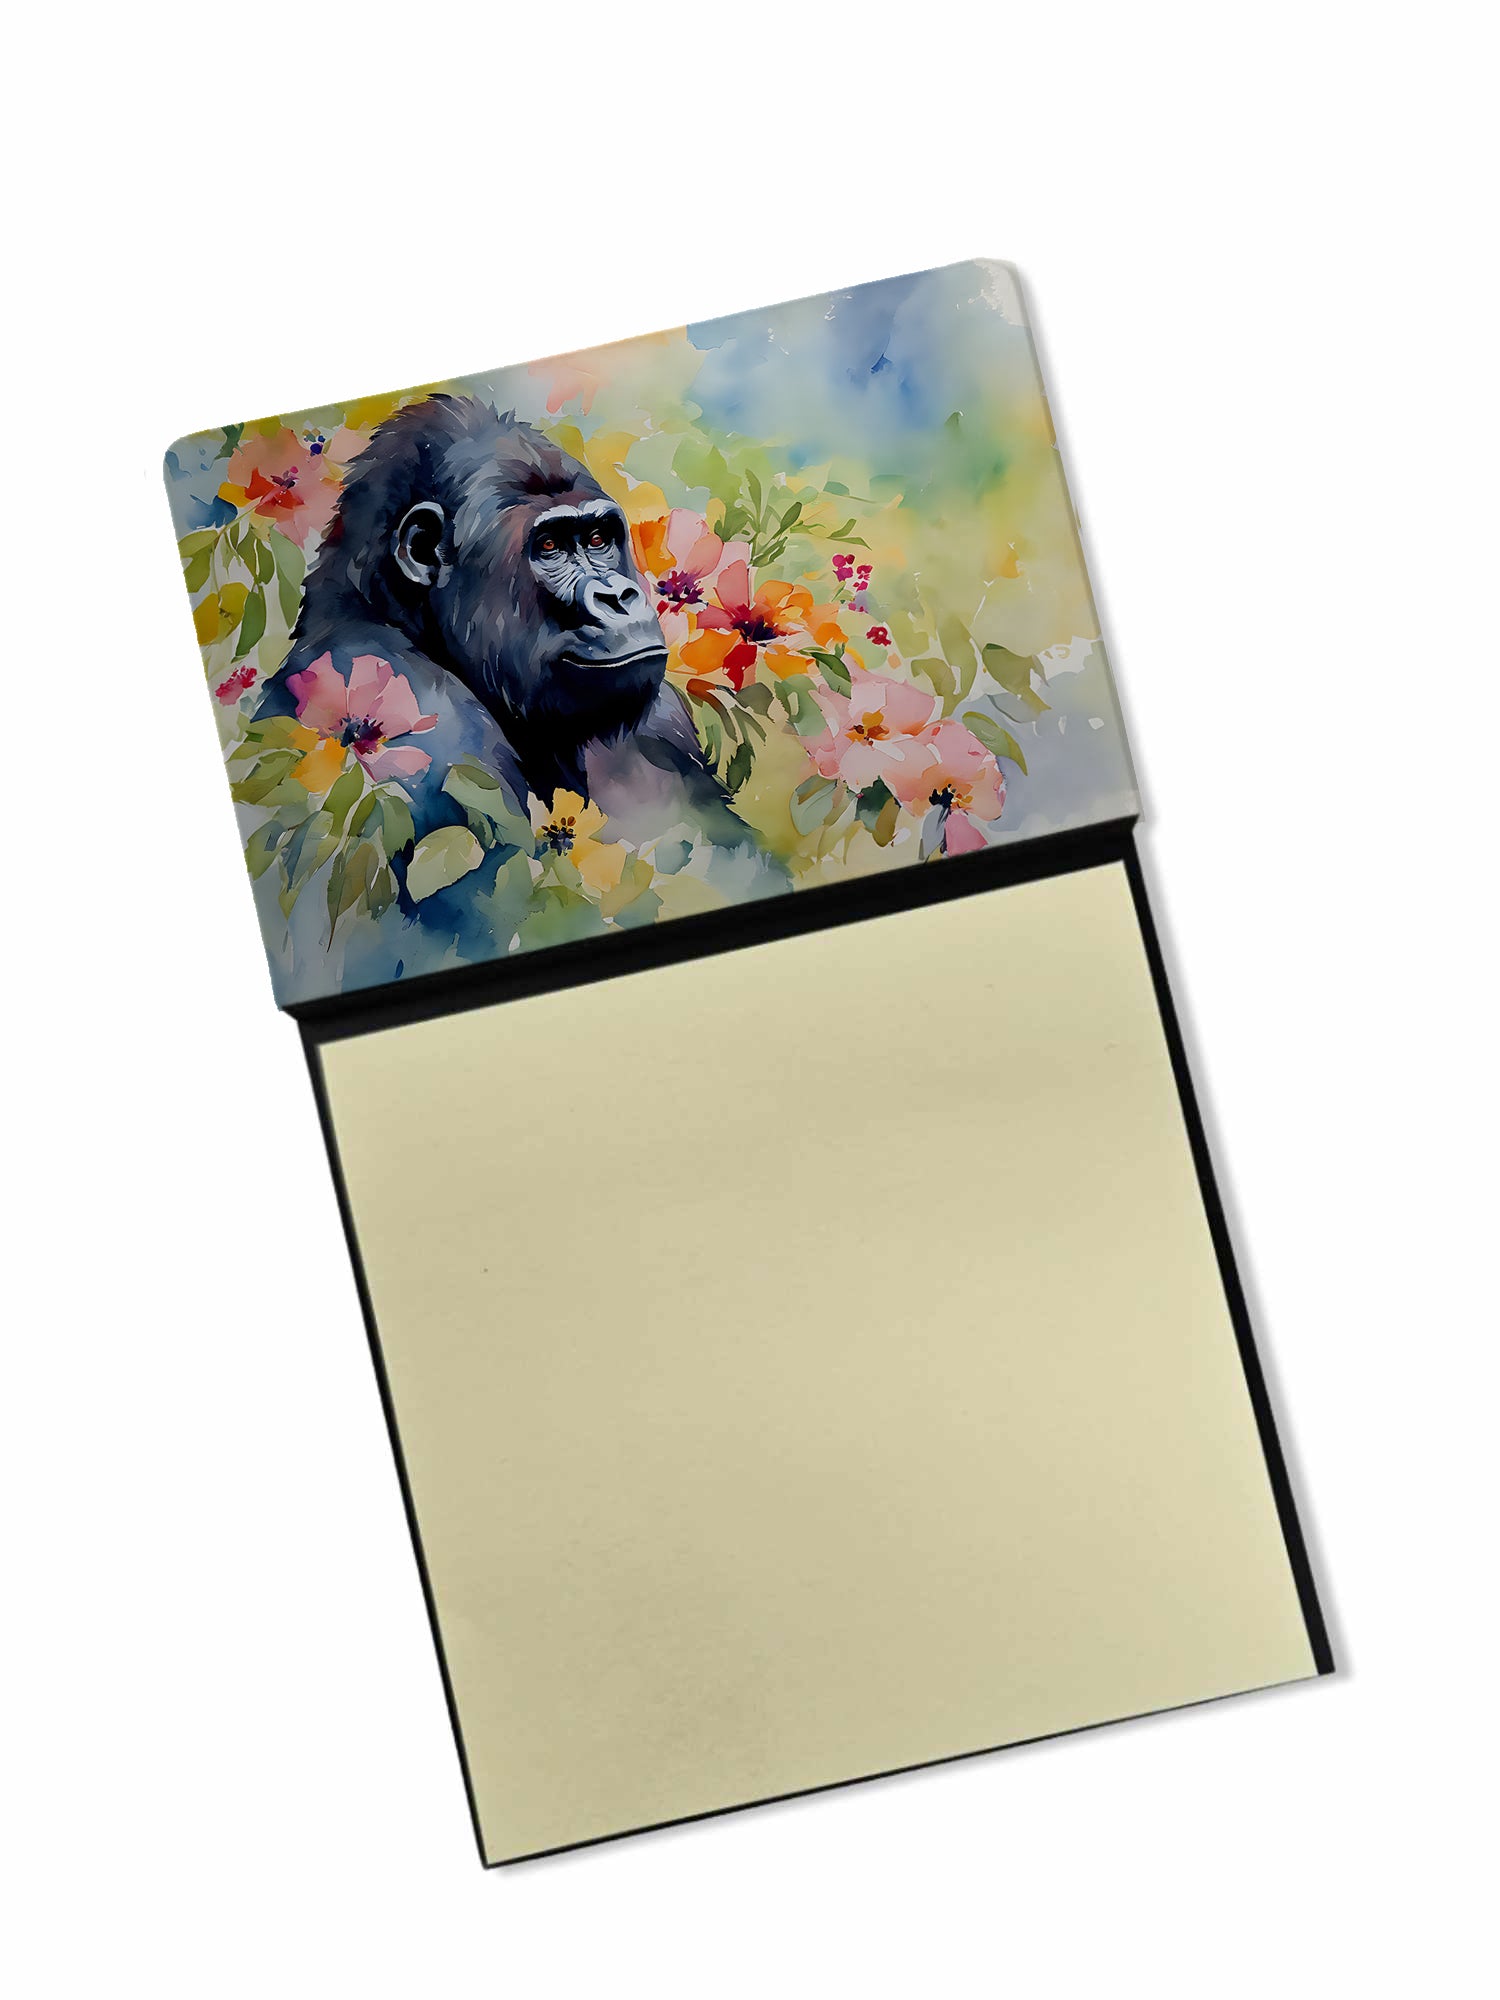 Buy this Gorilla Sticky Note Holder